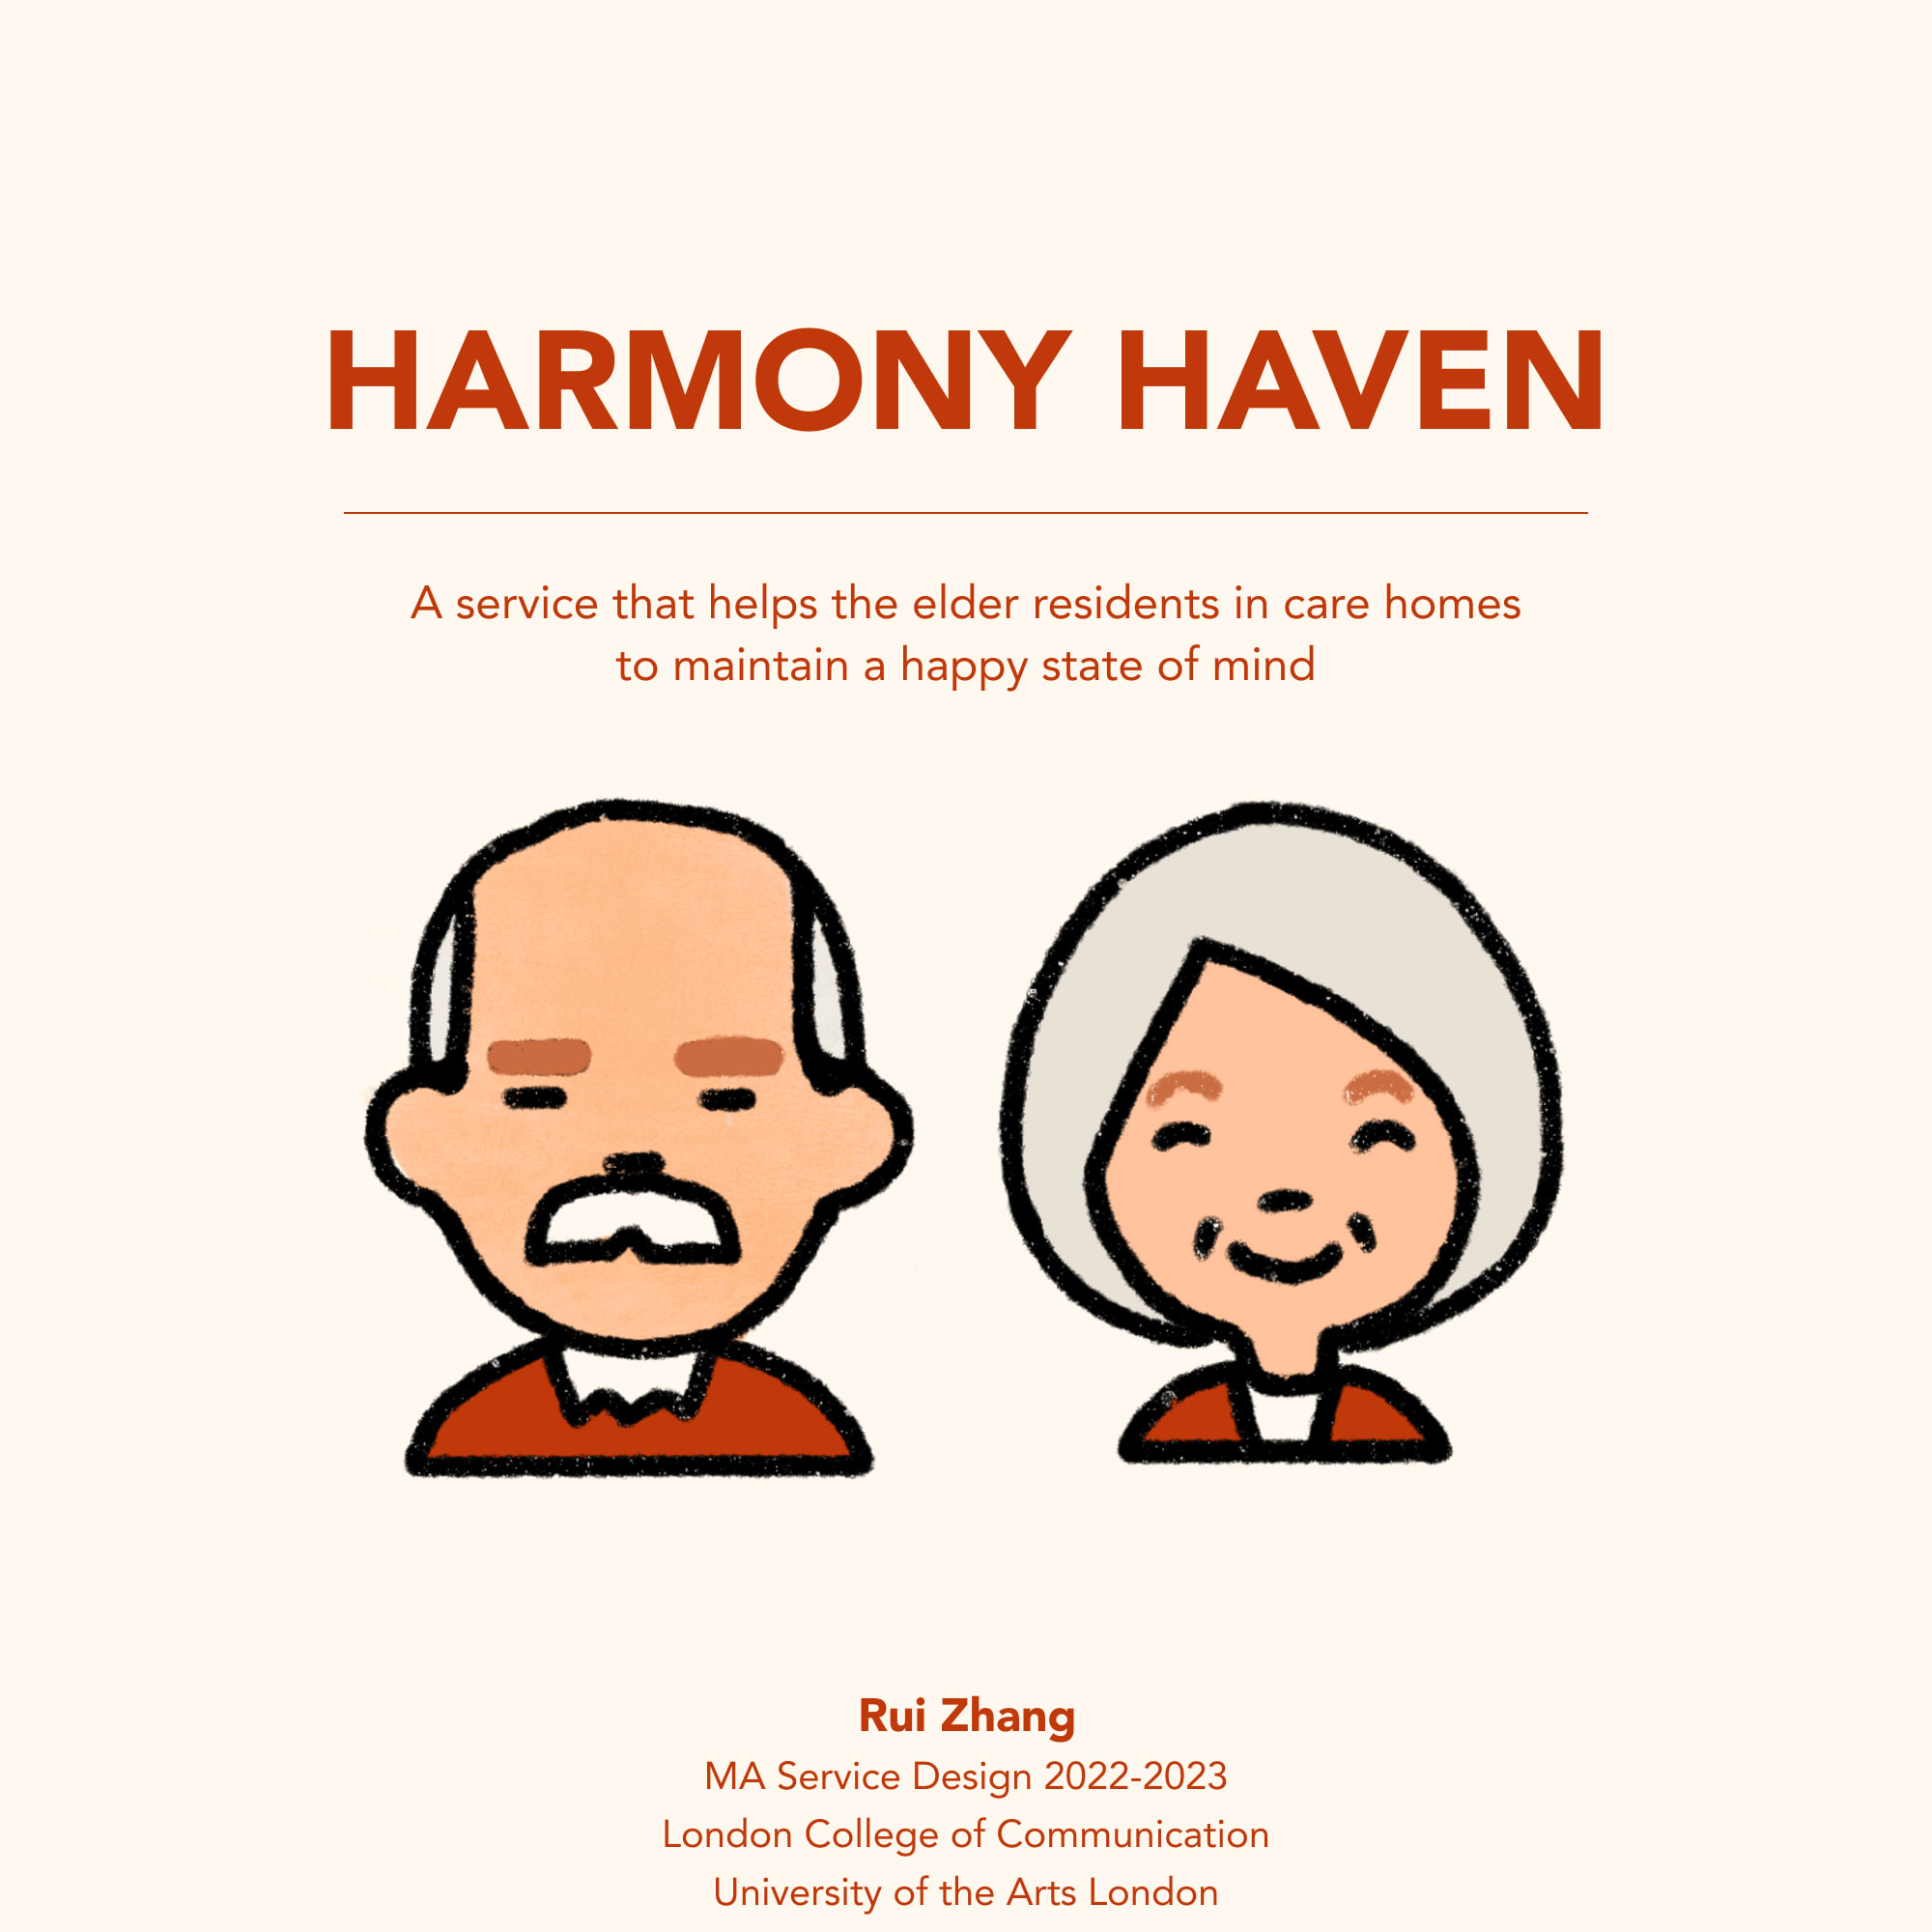 HARMONY HAVEN